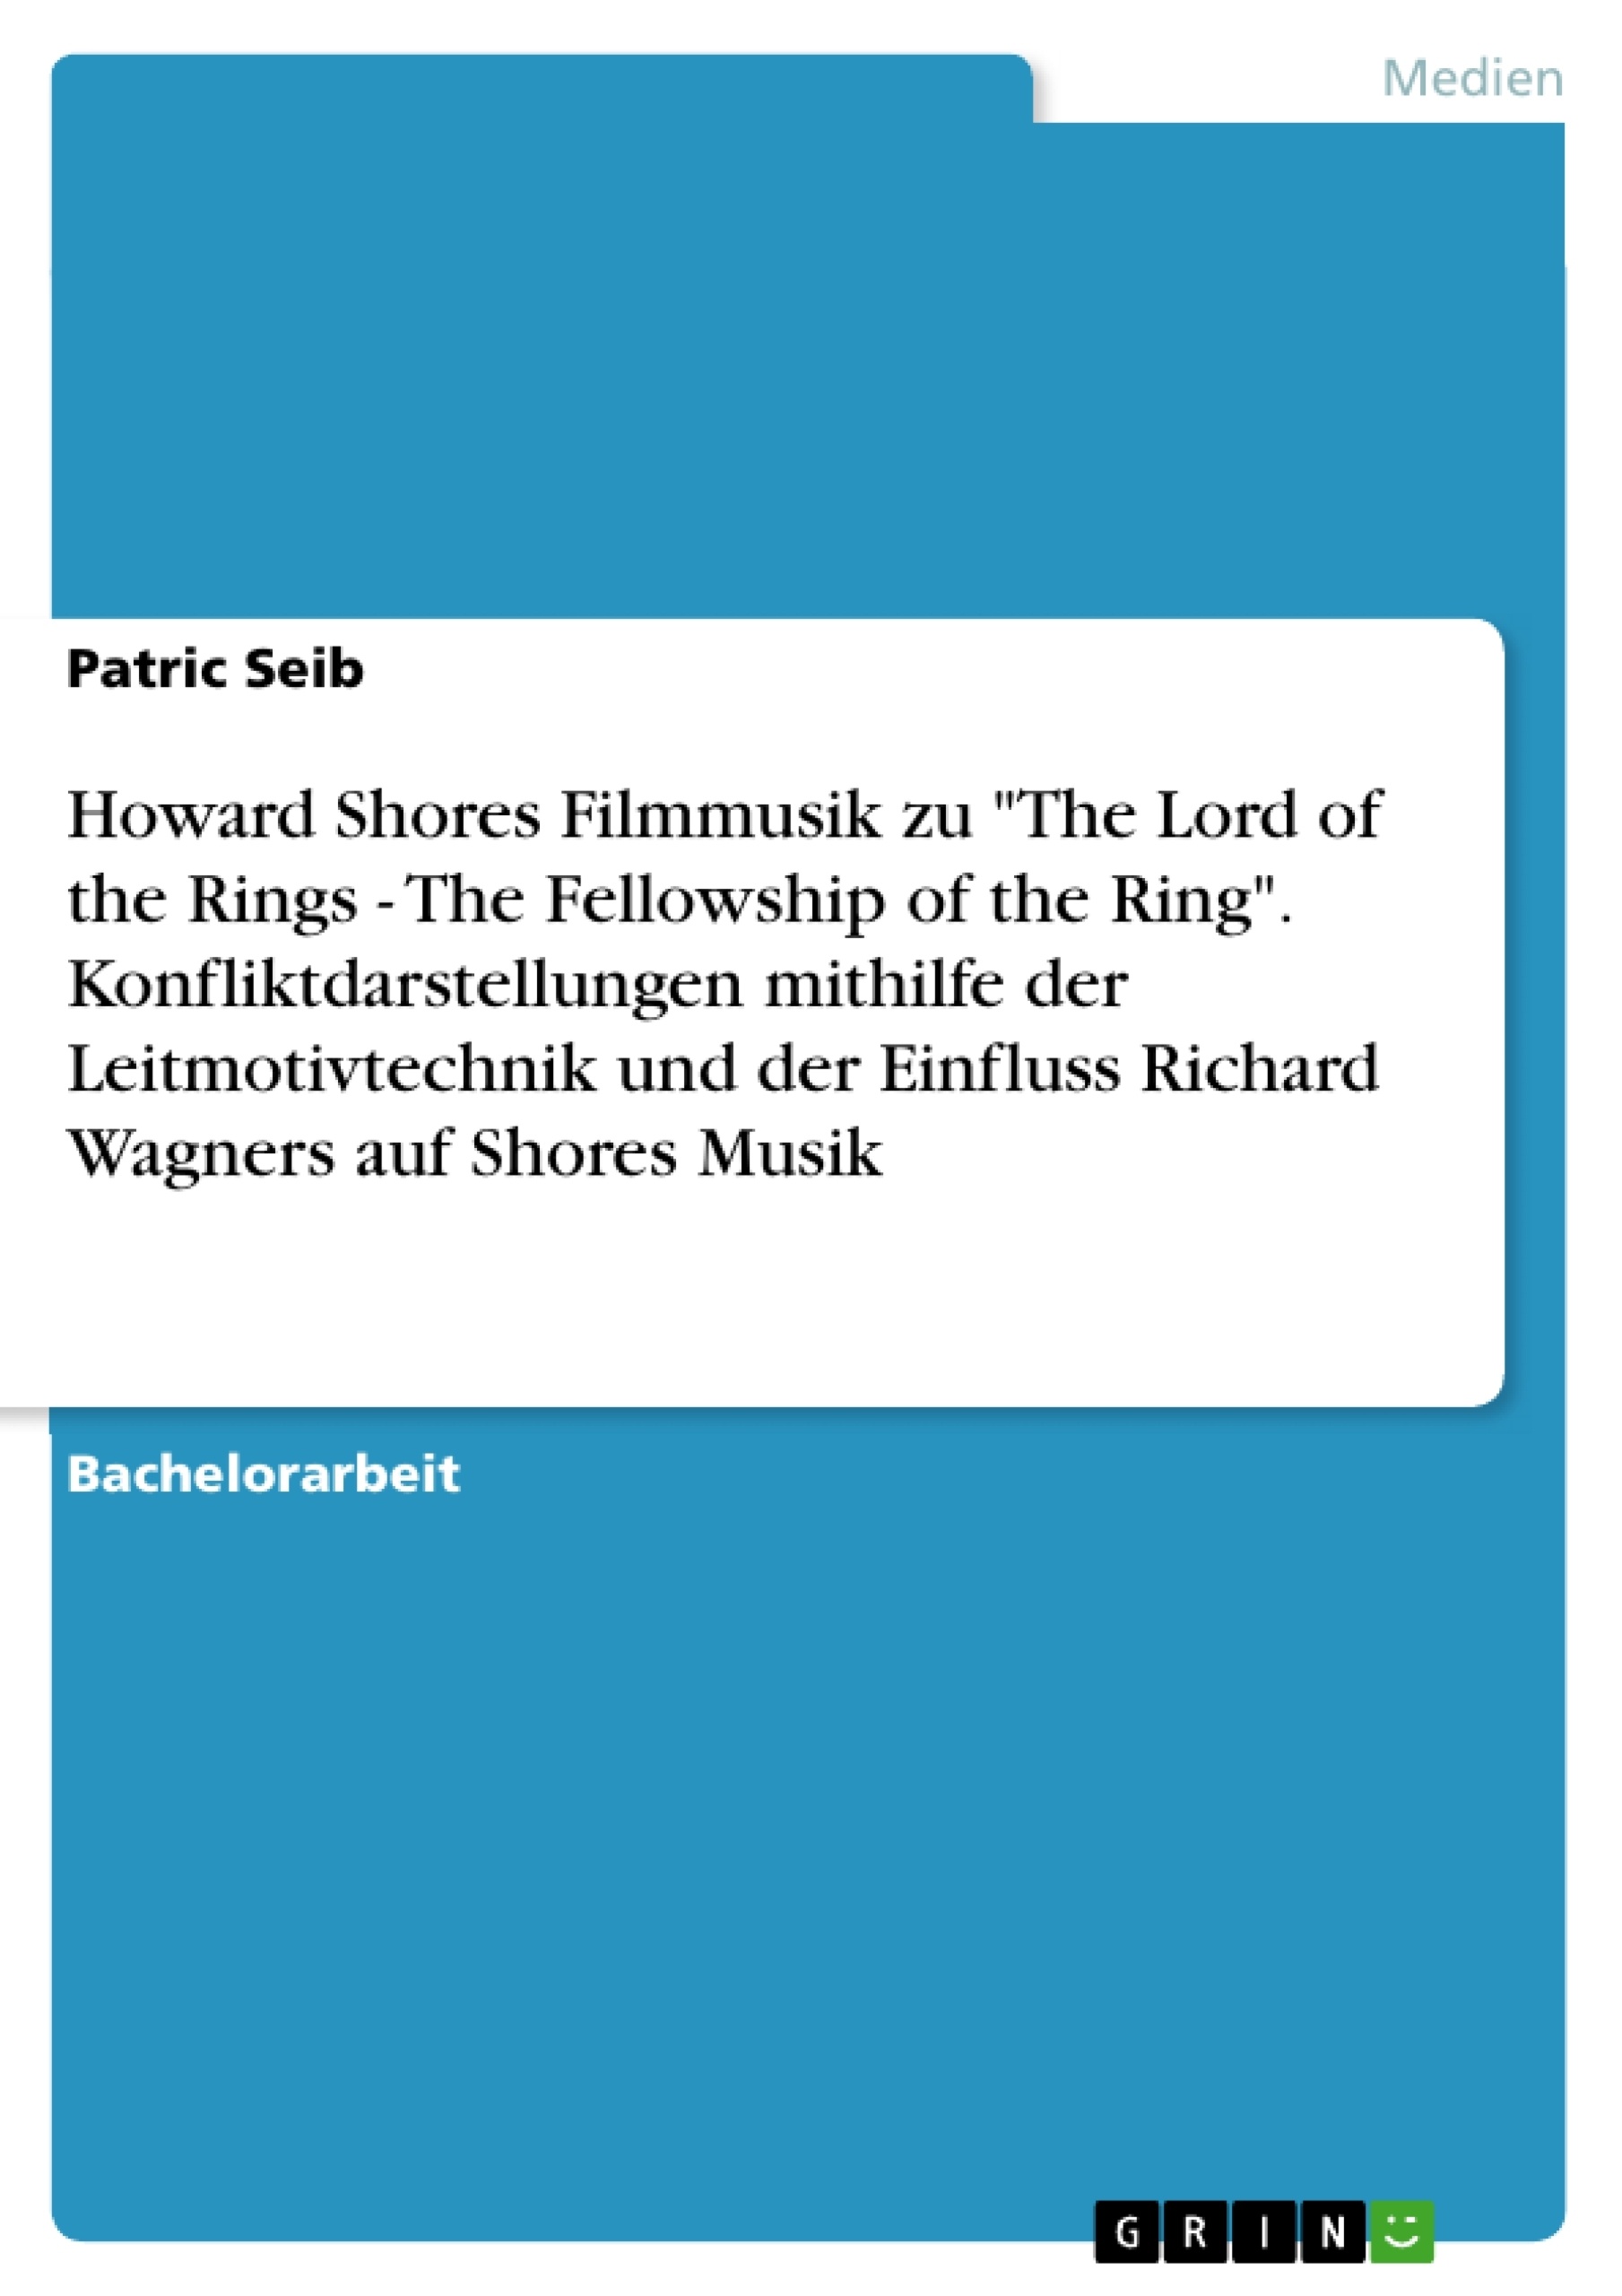 Titel: Howard Shores Filmmusik zu "The Lord of the Rings - The Fellowship of the Ring". Konfliktdarstellungen mithilfe der Leitmotivtechnik und der Einfluss Richard Wagners auf Shores Musik